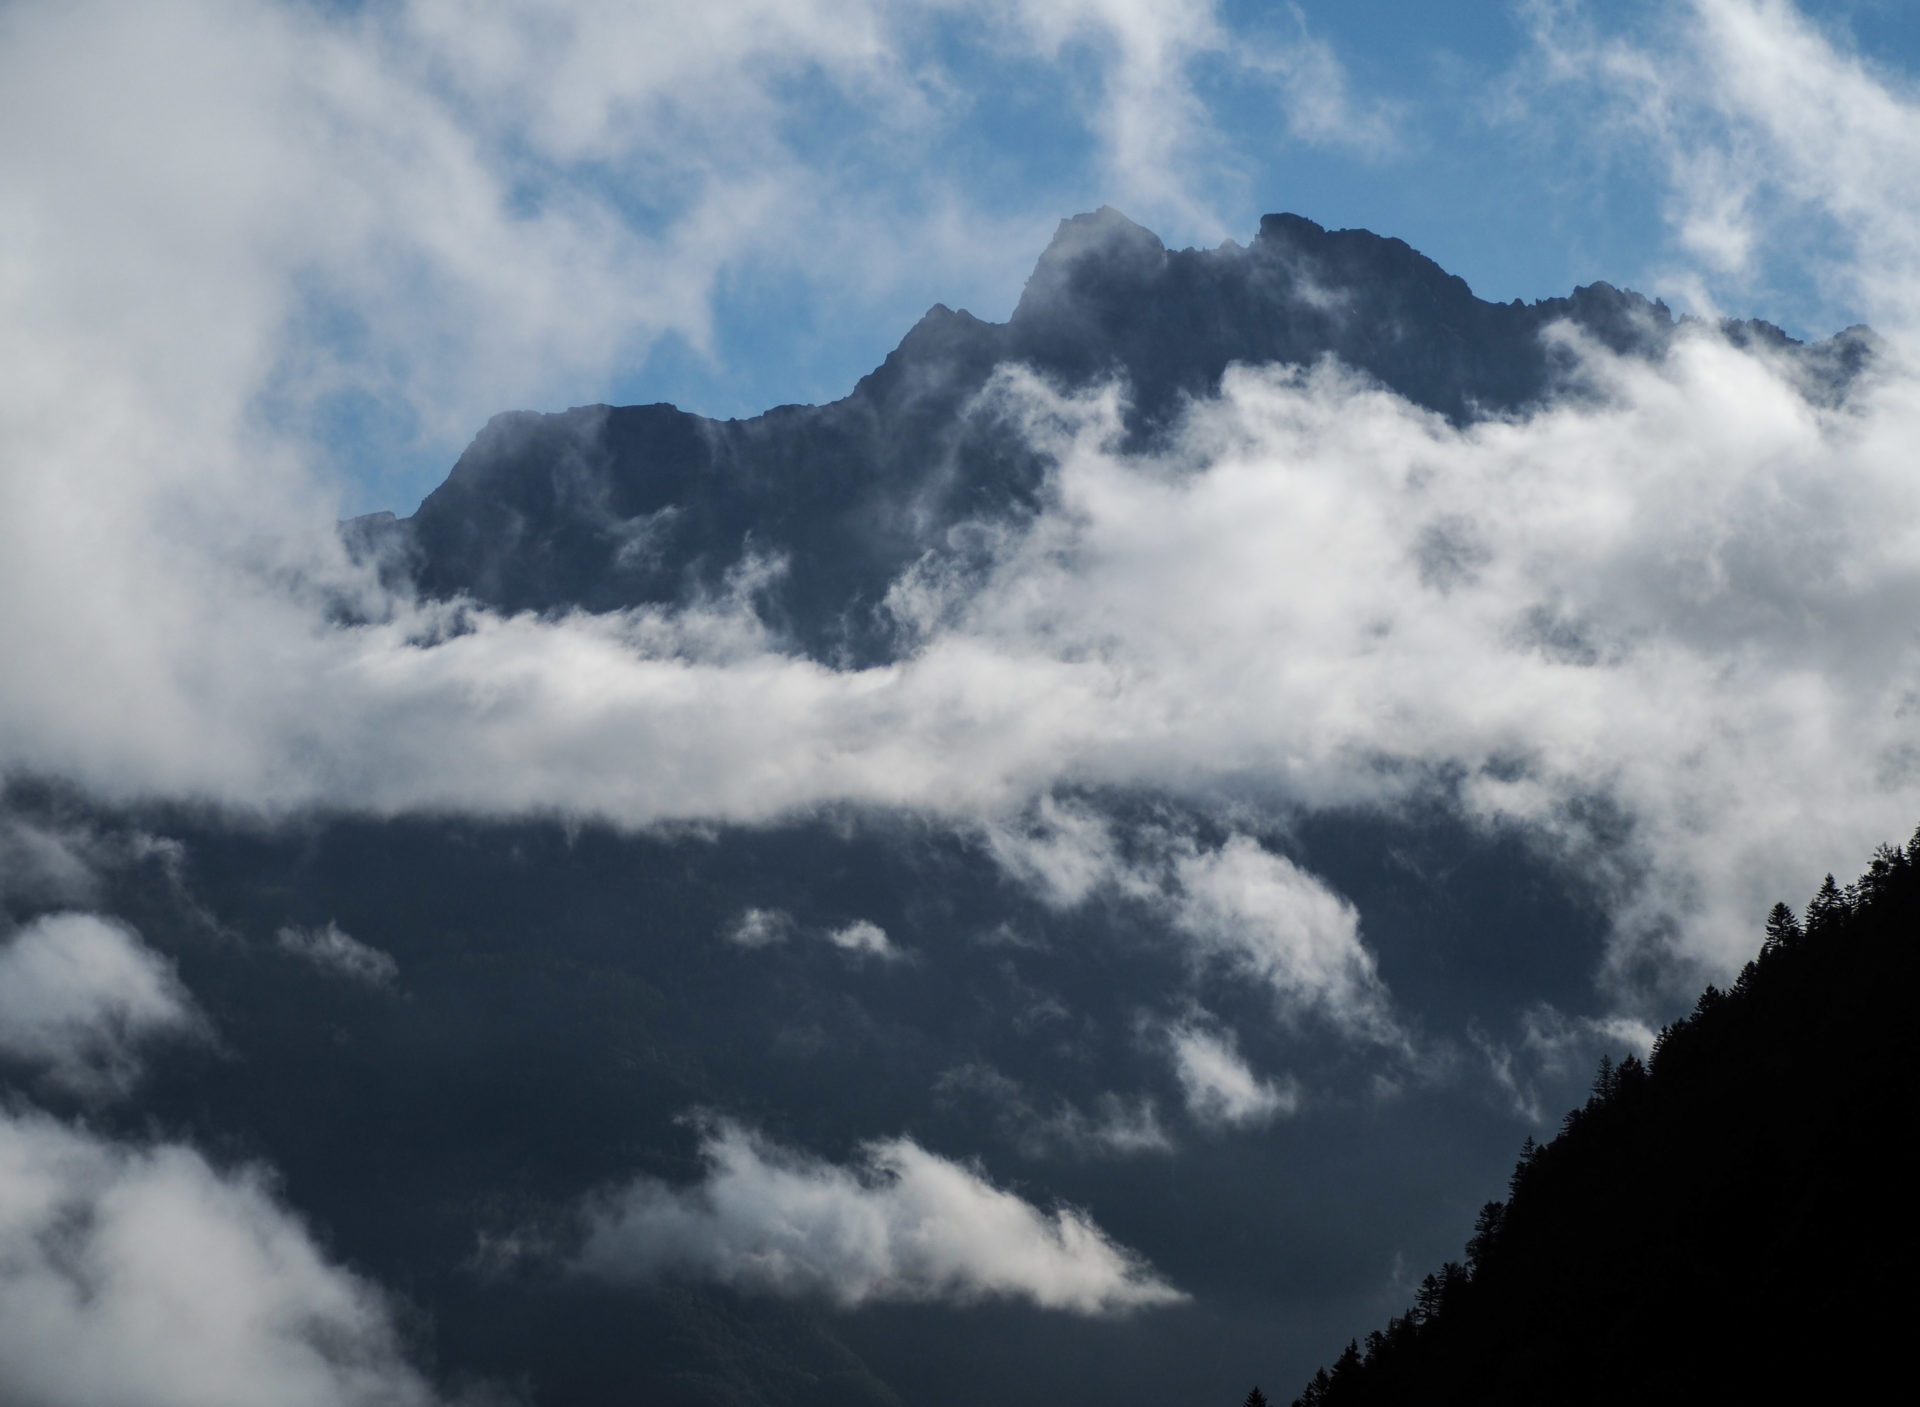 Le village de Mex sur le Tour des Dents du Midi - Faire le Tour des Dents du Midi en 6 jours en solo et en mode slow - Une randonnée itinérante, un trek à découvrir en Suisse dans le Valais